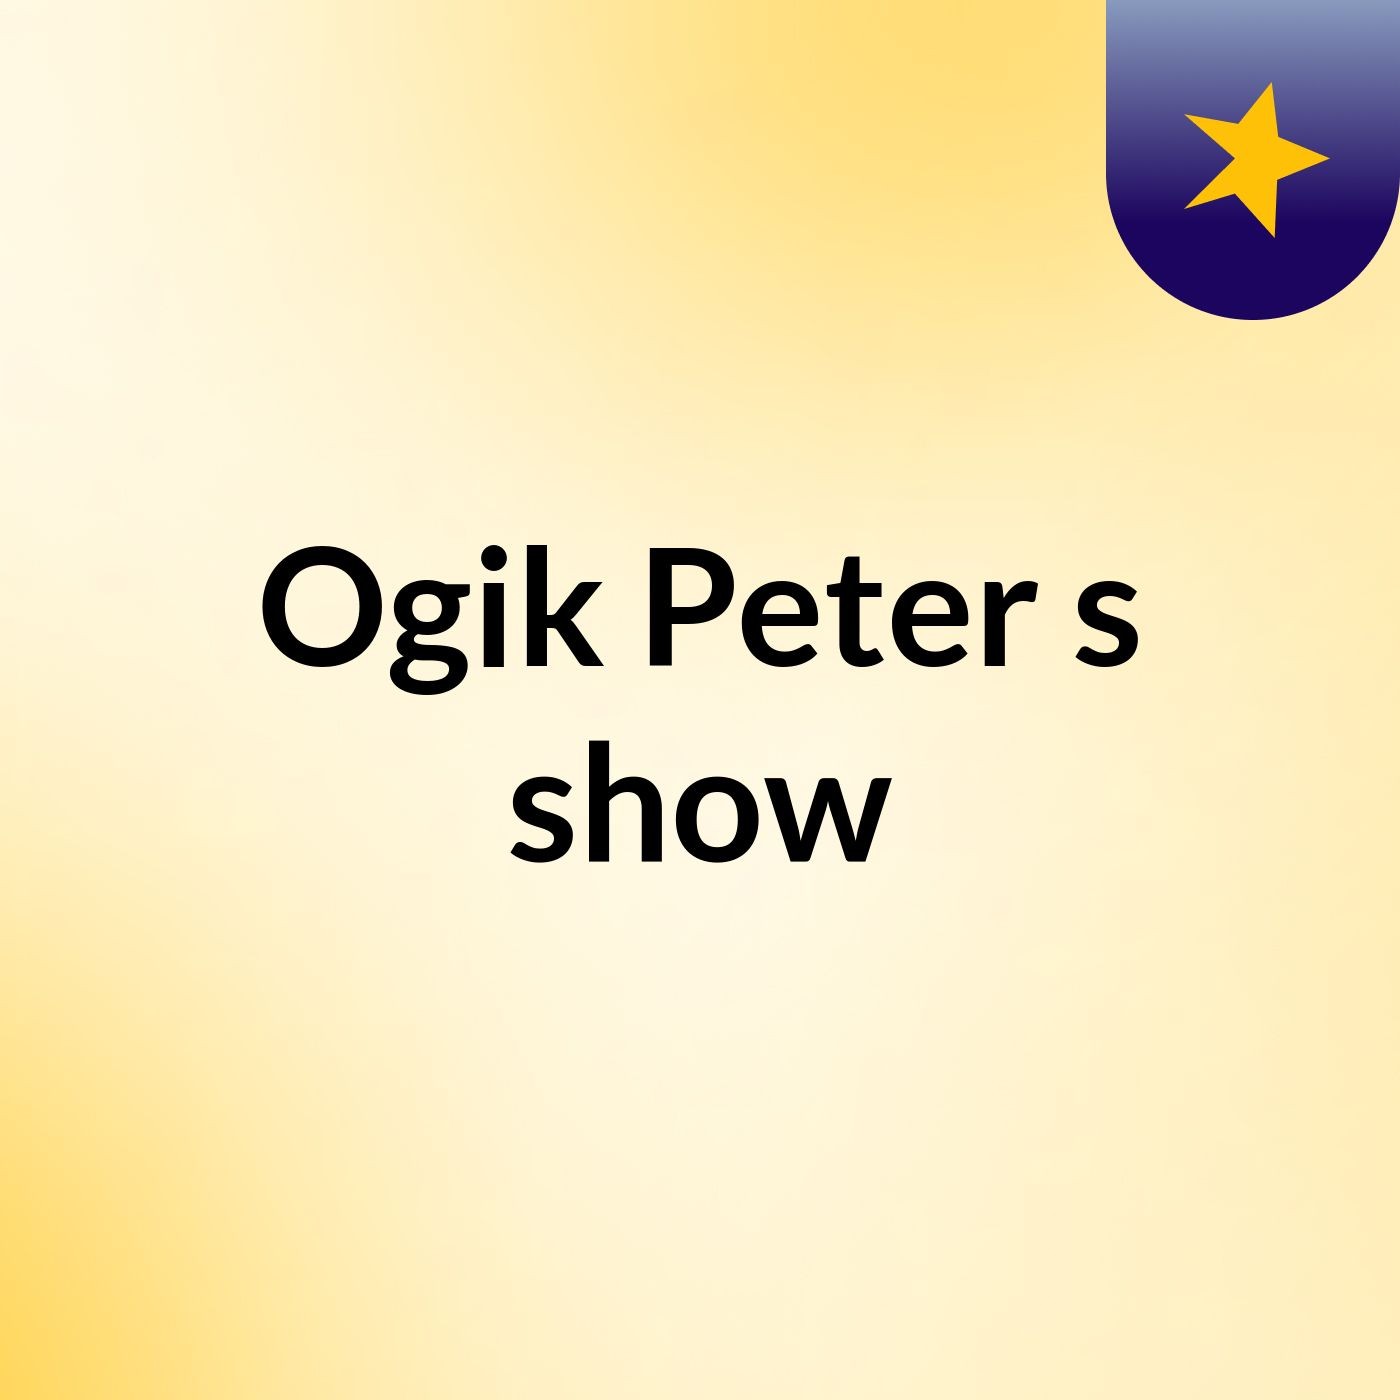 Don't lose hope. Peter Ogik's show